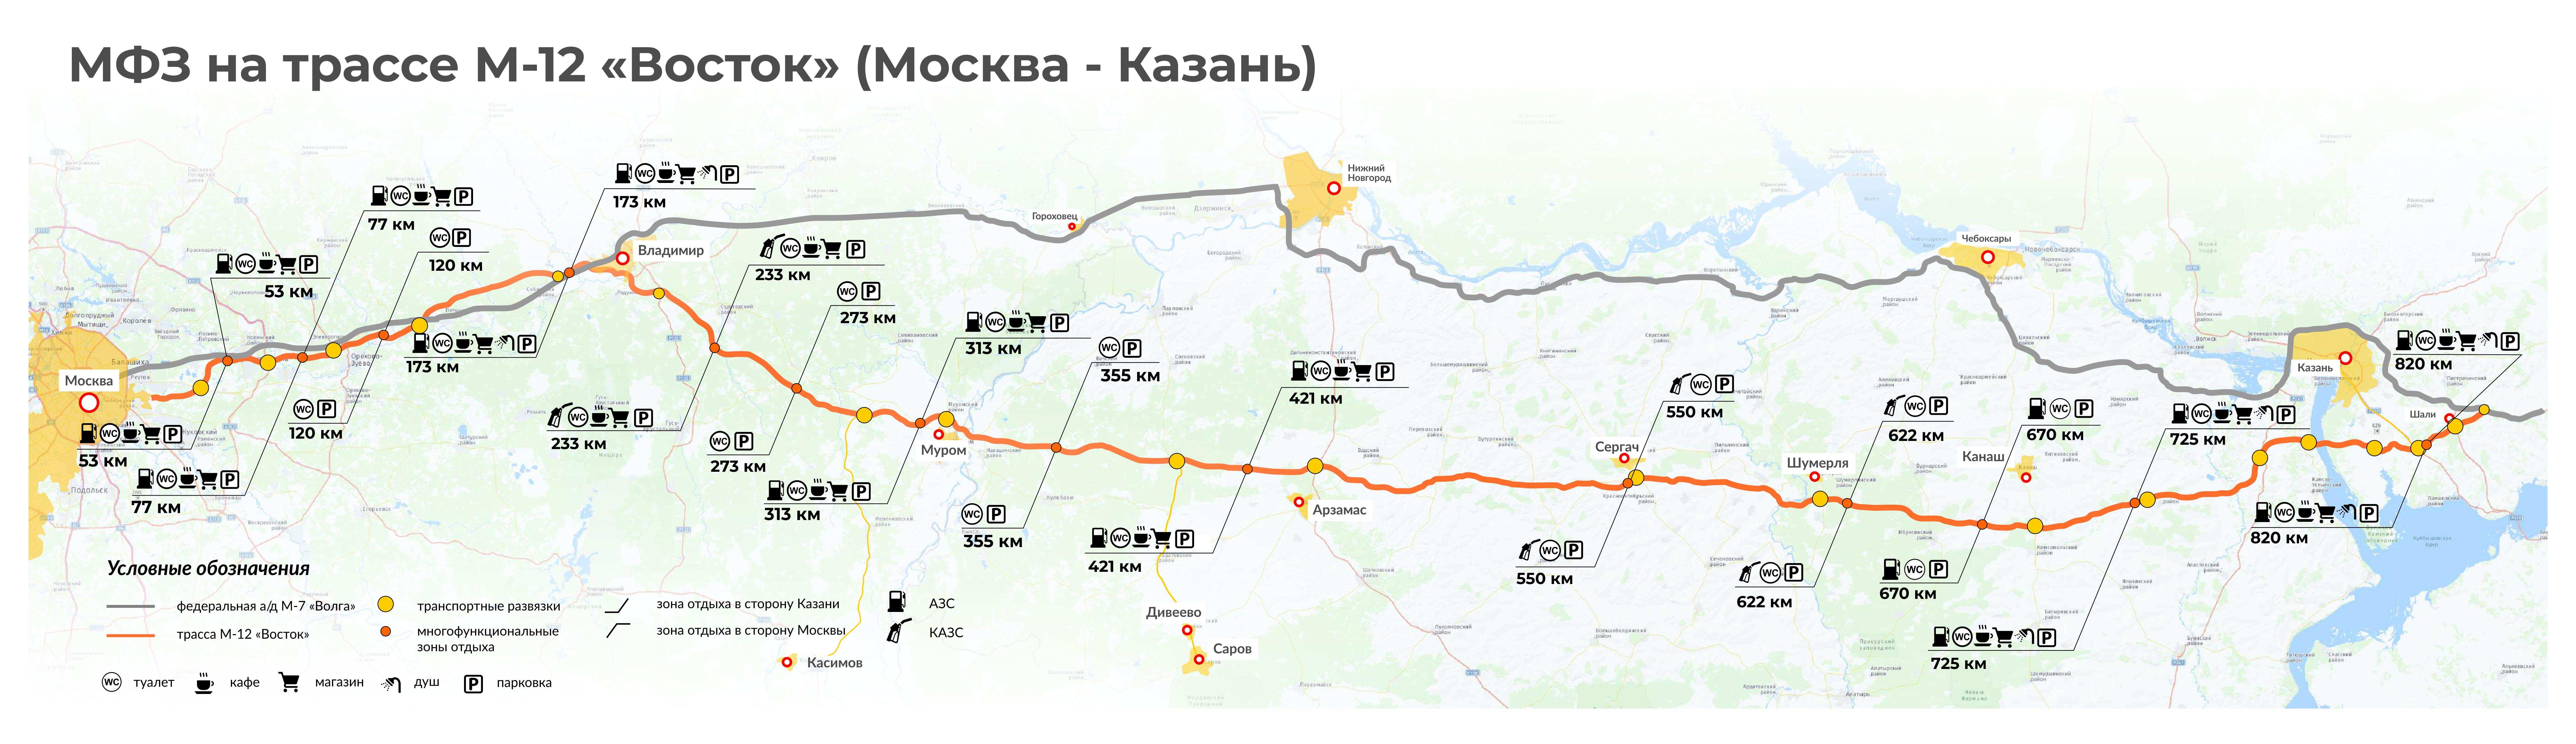 Обнародована схема трассы М-12 «Восток» с развязками в Нижегородской области - фото 2